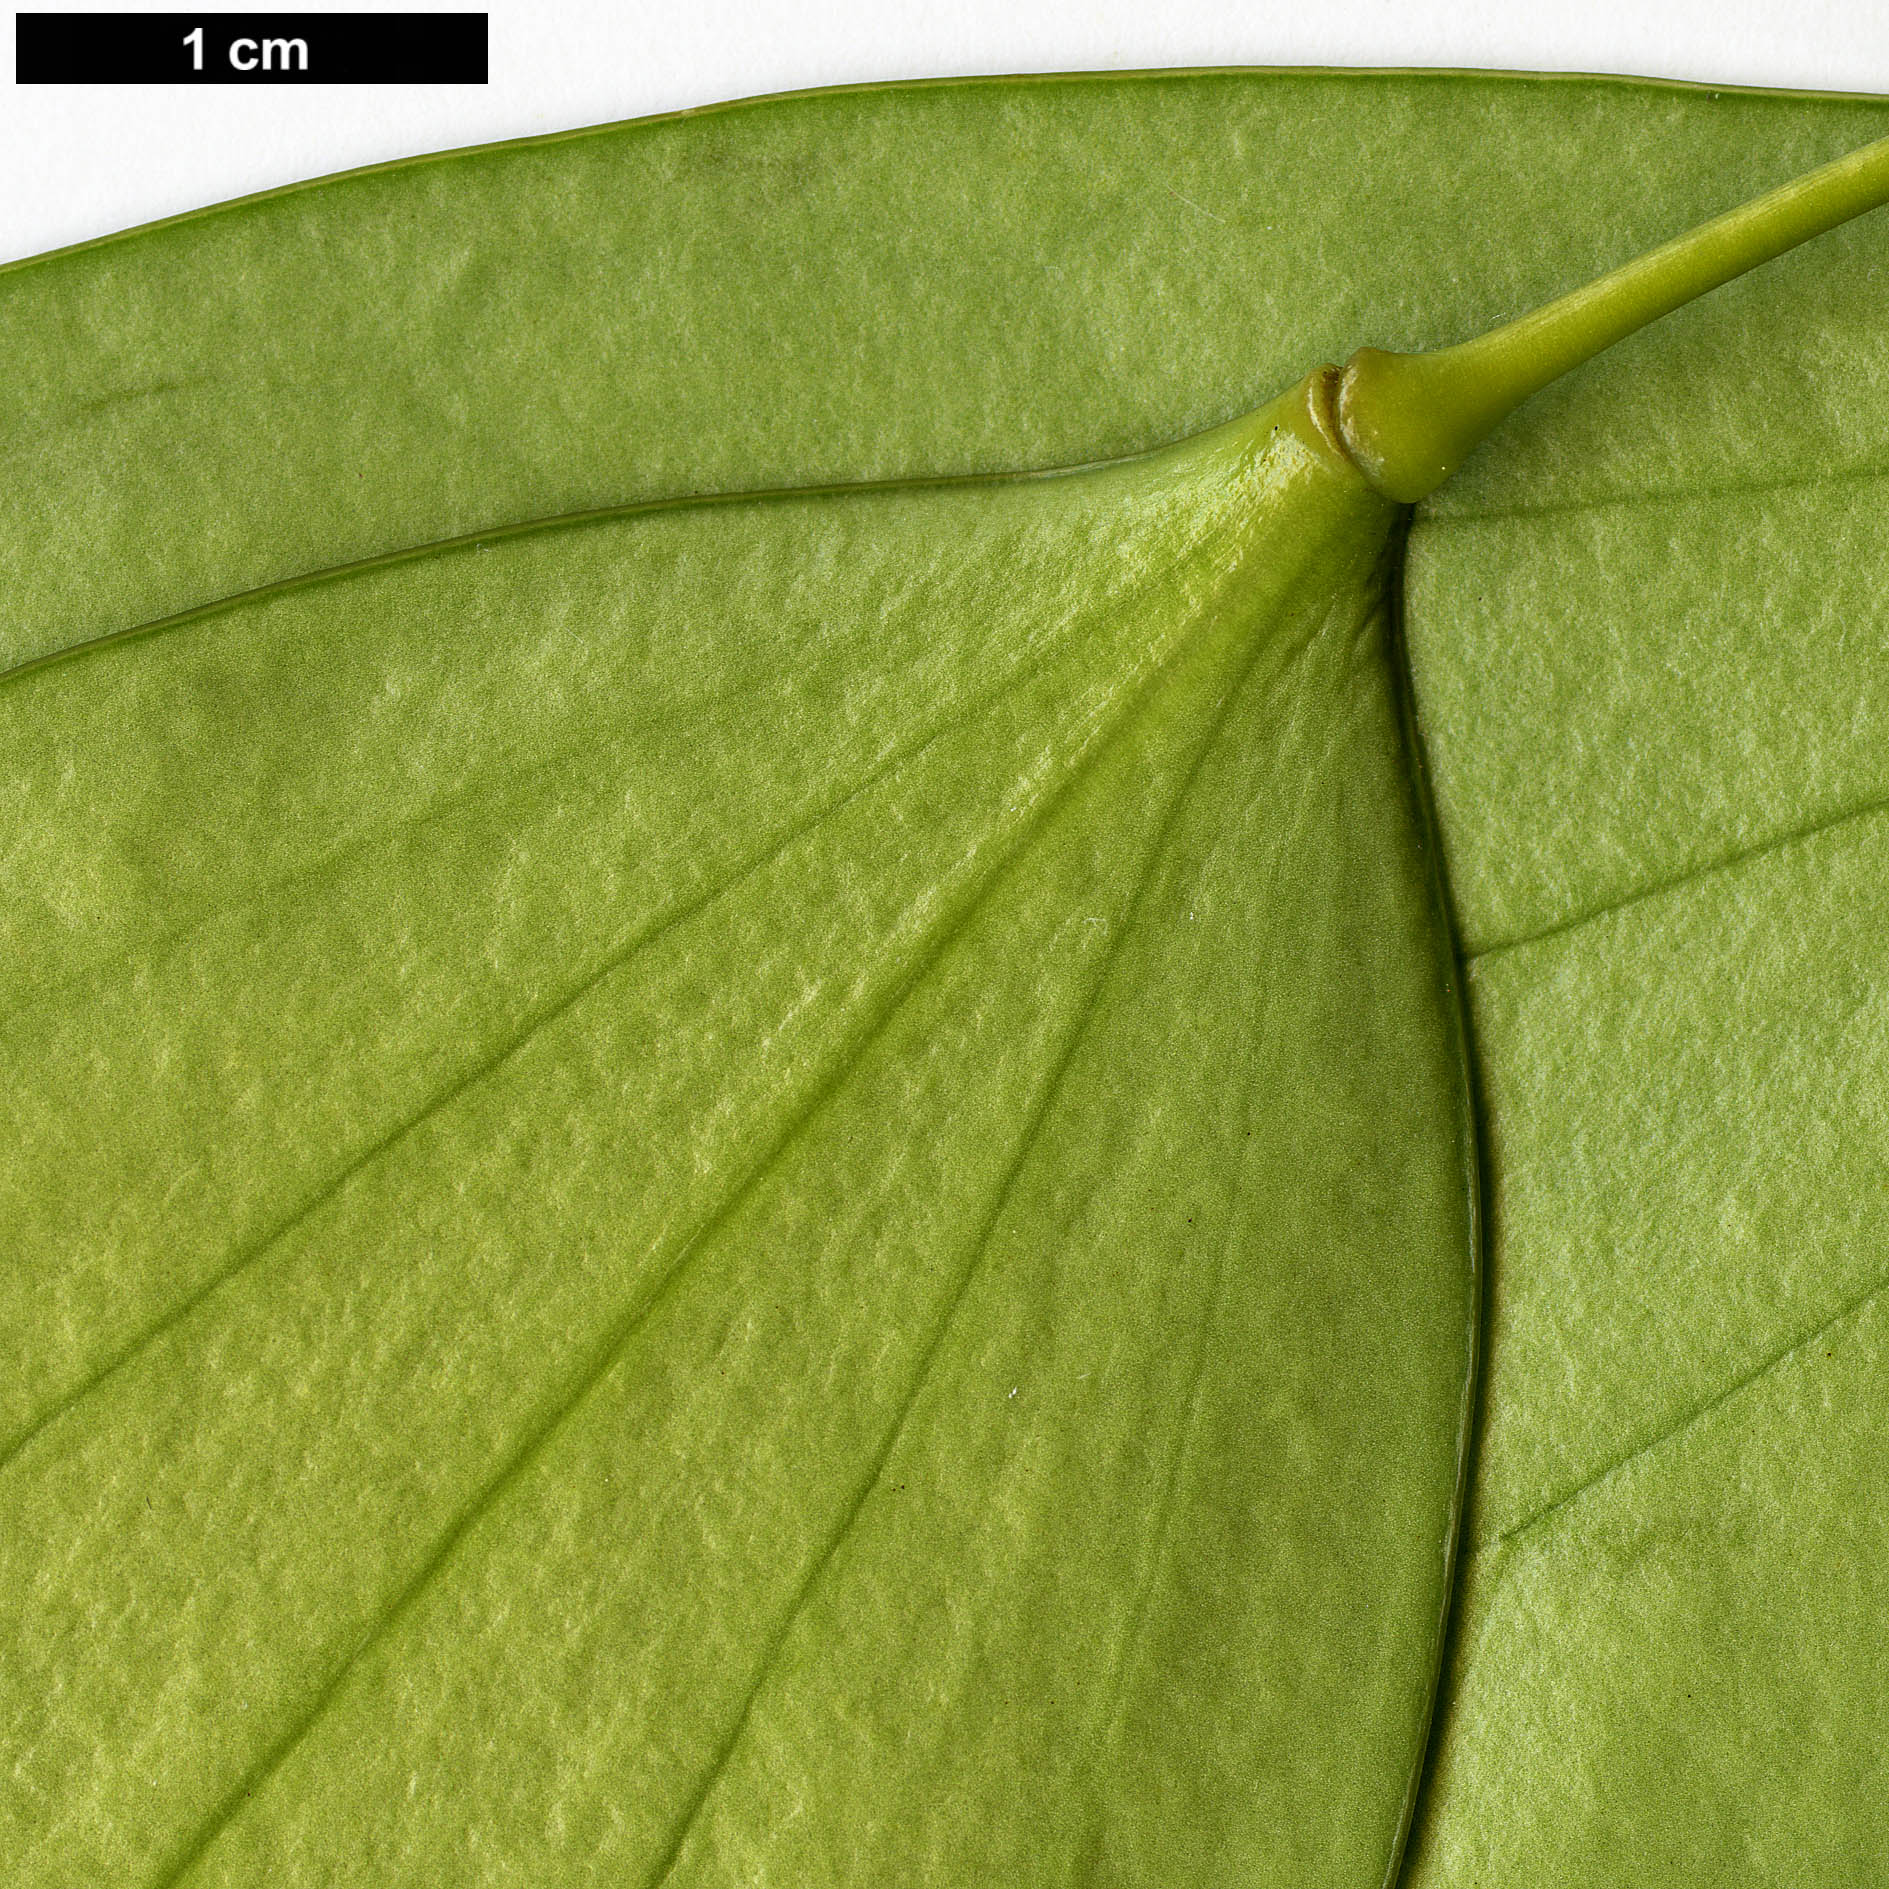 High resolution image: Family: Berberidaceae - Genus: Mahonia - Taxon: nitens